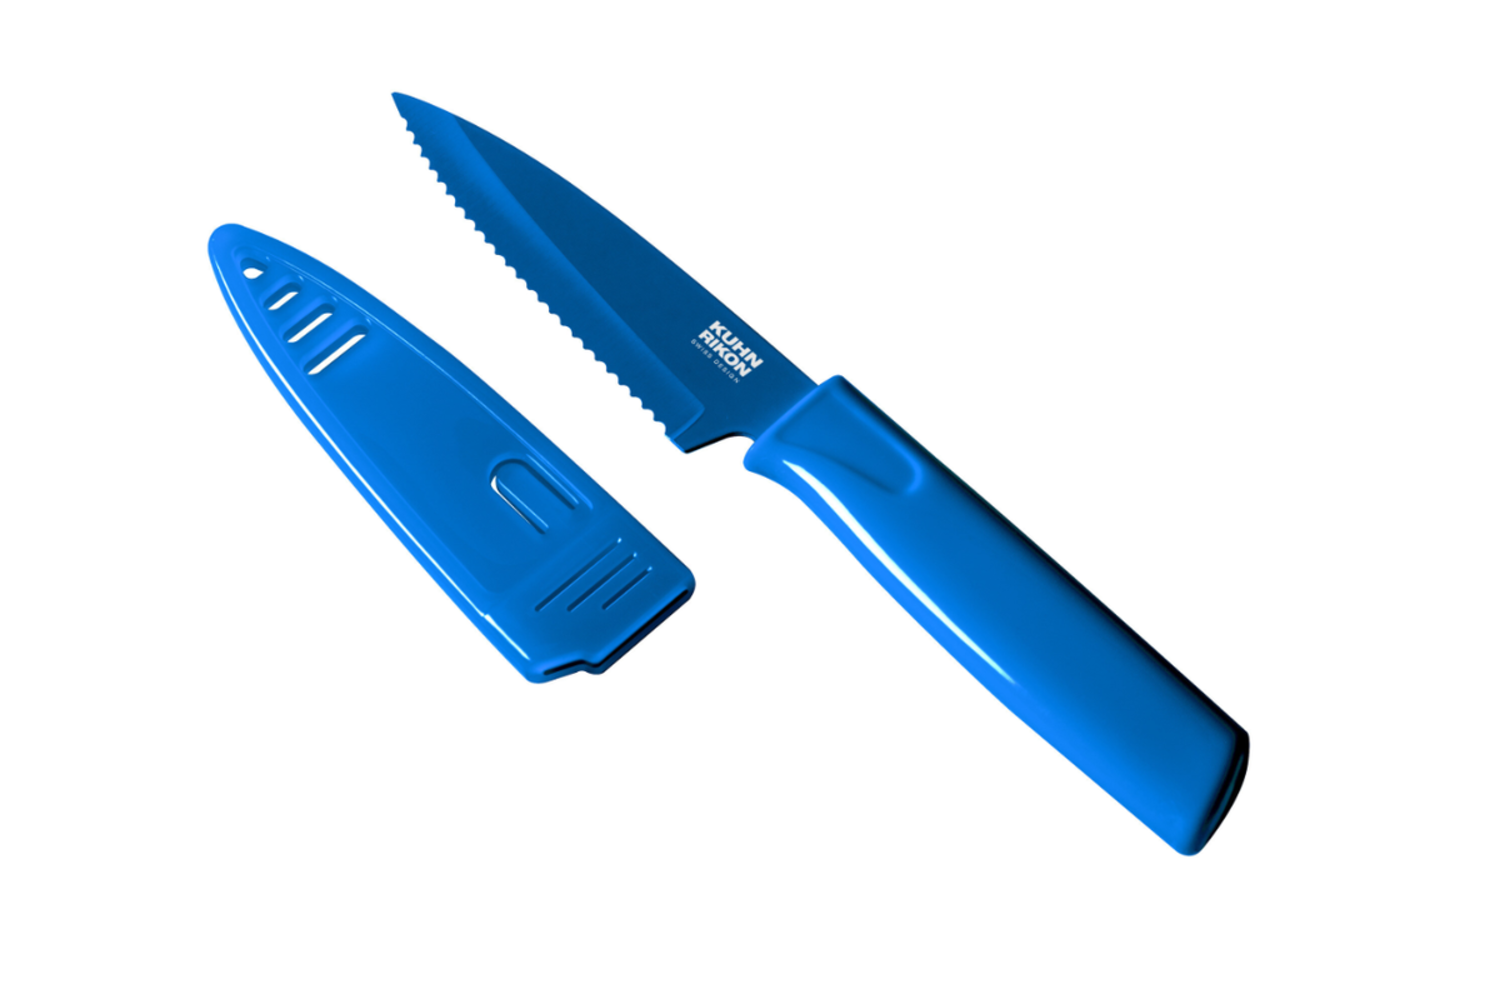 https://cdn.shoplightspeed.com/shops/633447/files/26890412/1500x4000x3/blueberry-serrated-paring-knife.jpg